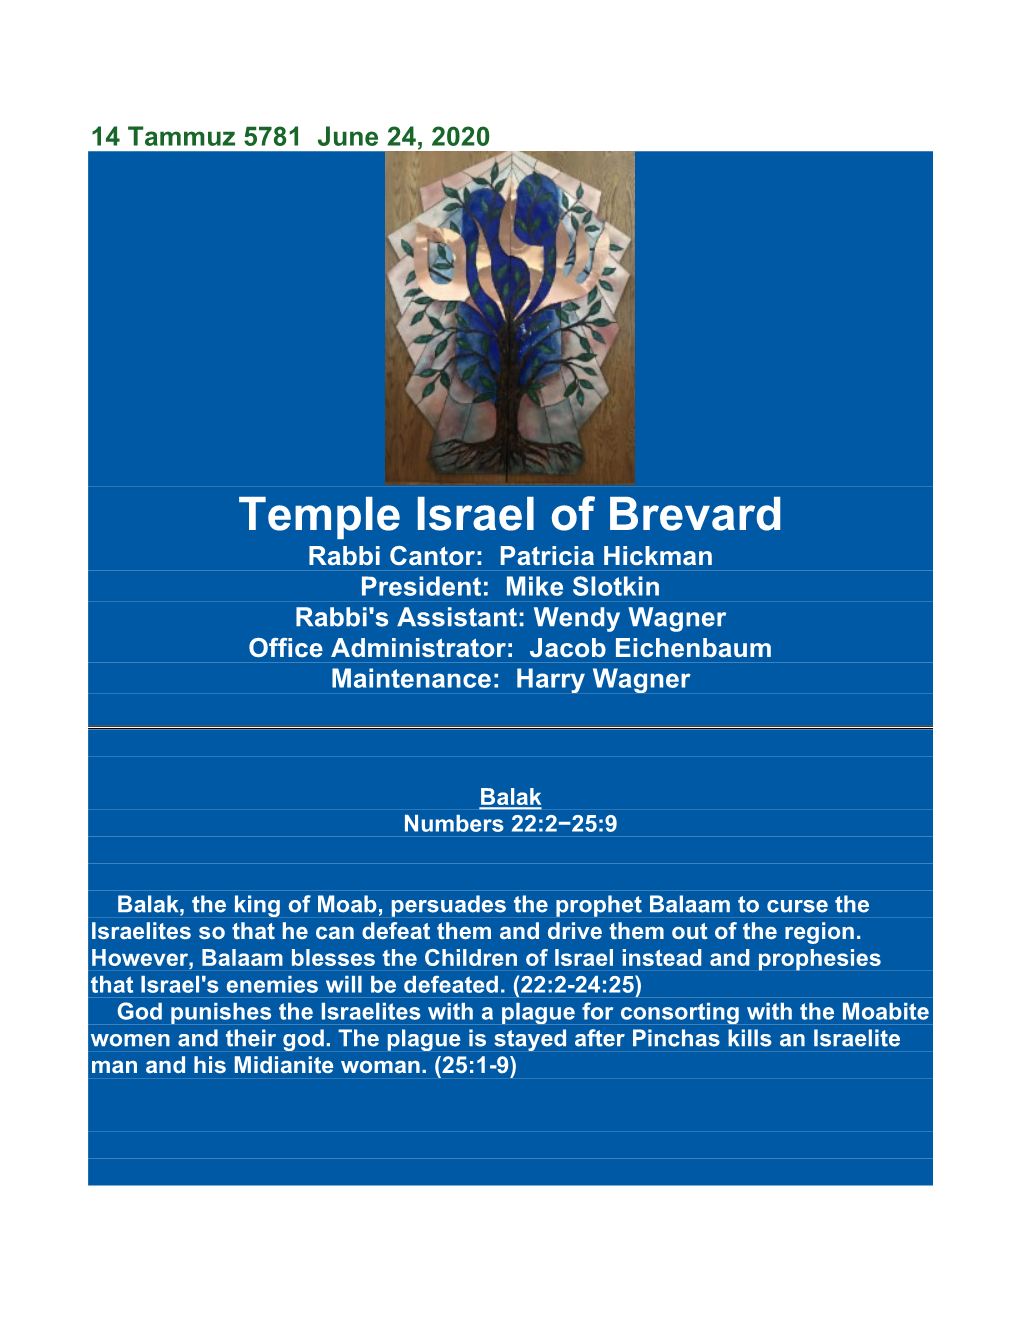 Temple Israel of Brevard